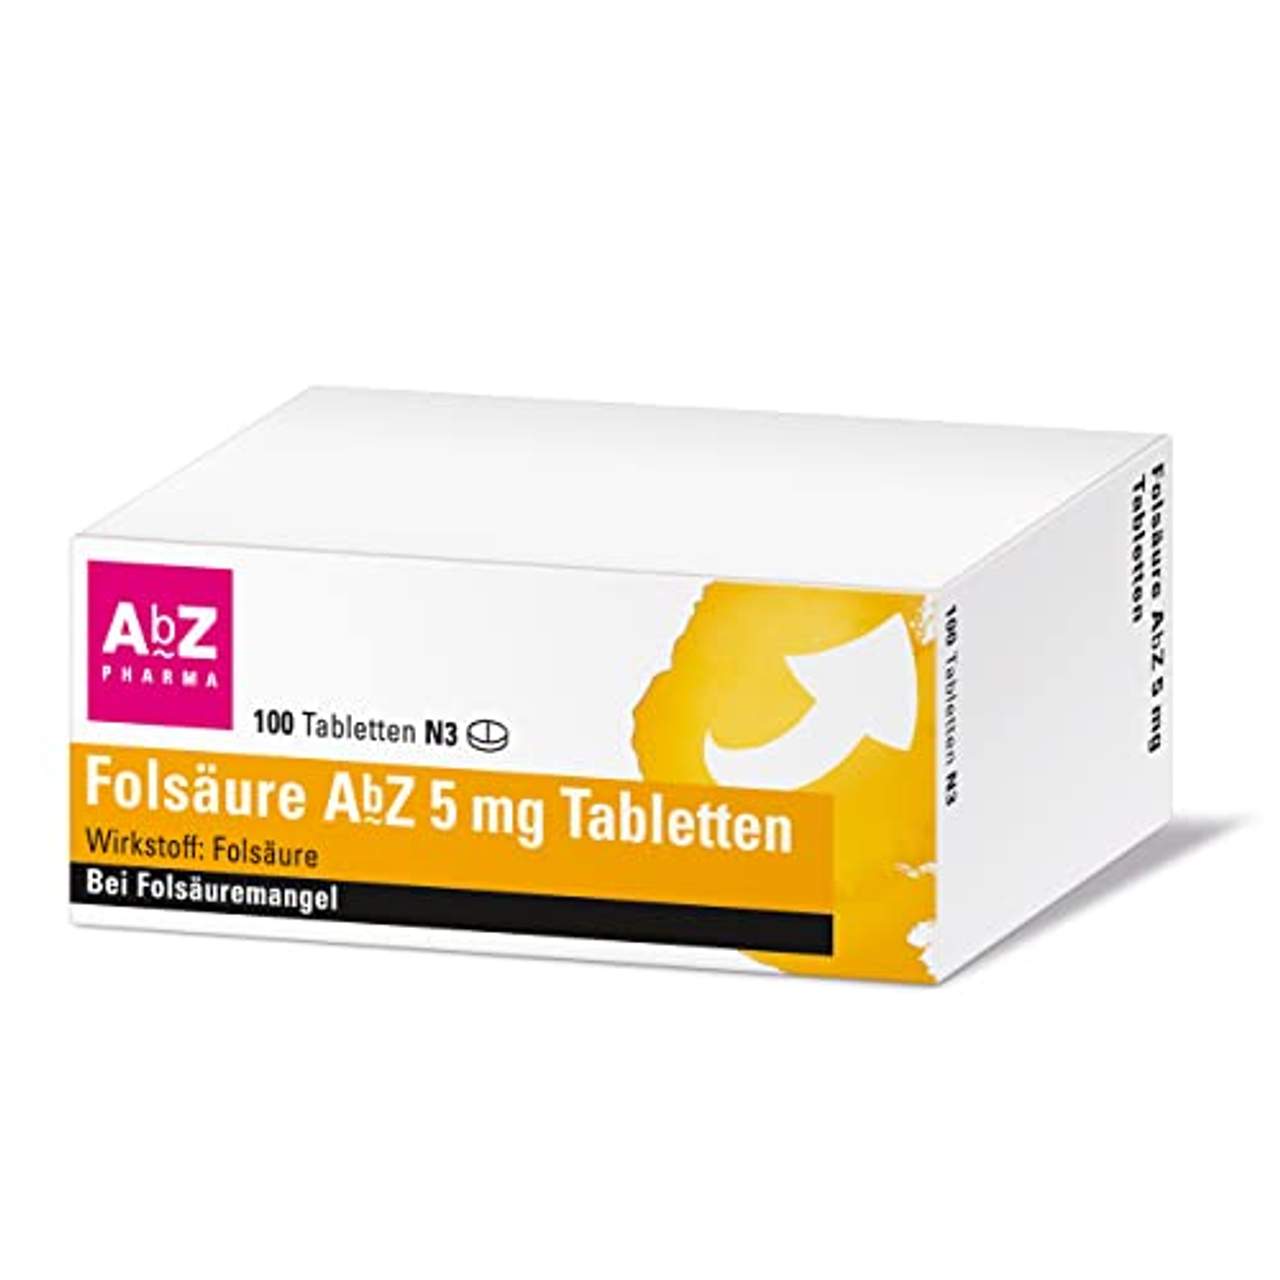 Folsäure AbZ 5 mg Tabletten bei Folsäuremangel